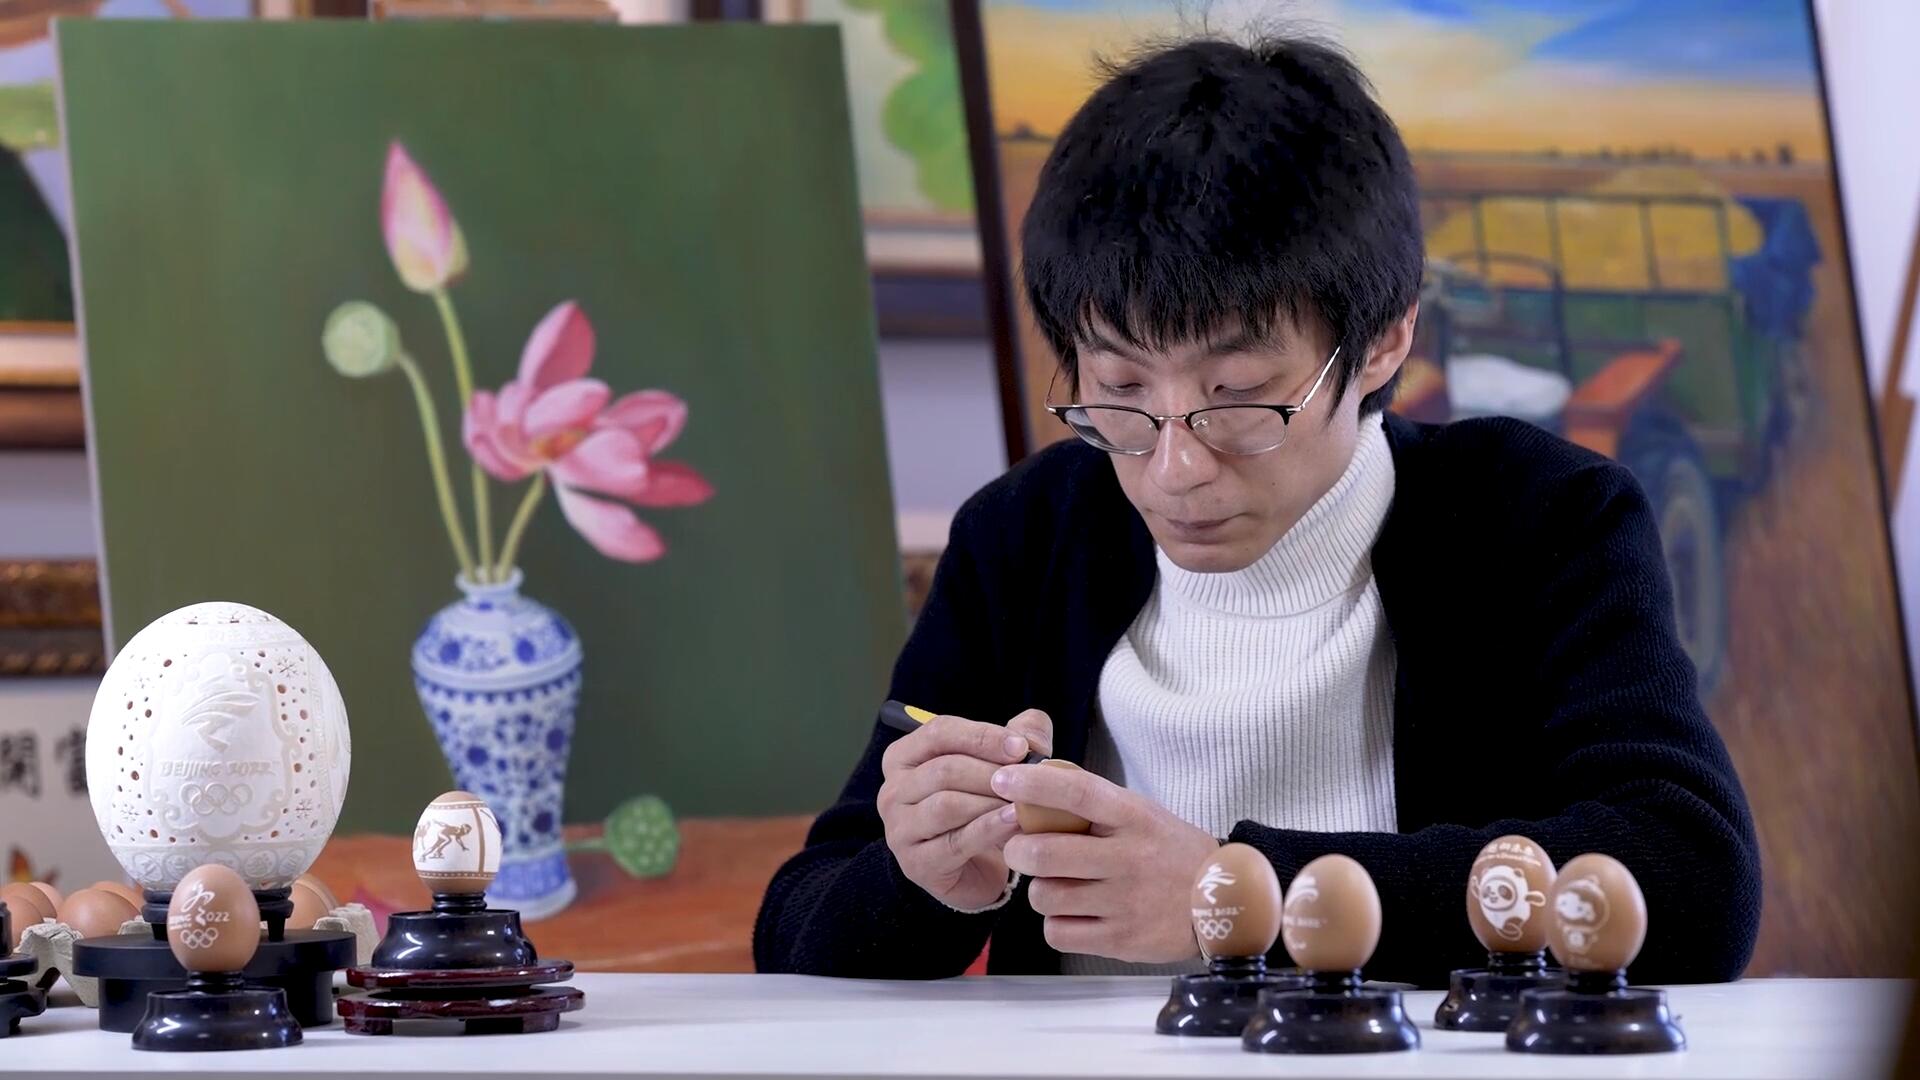 فيديو: أعمال فنية على قشر البيض في يدي فني حرفي صيني